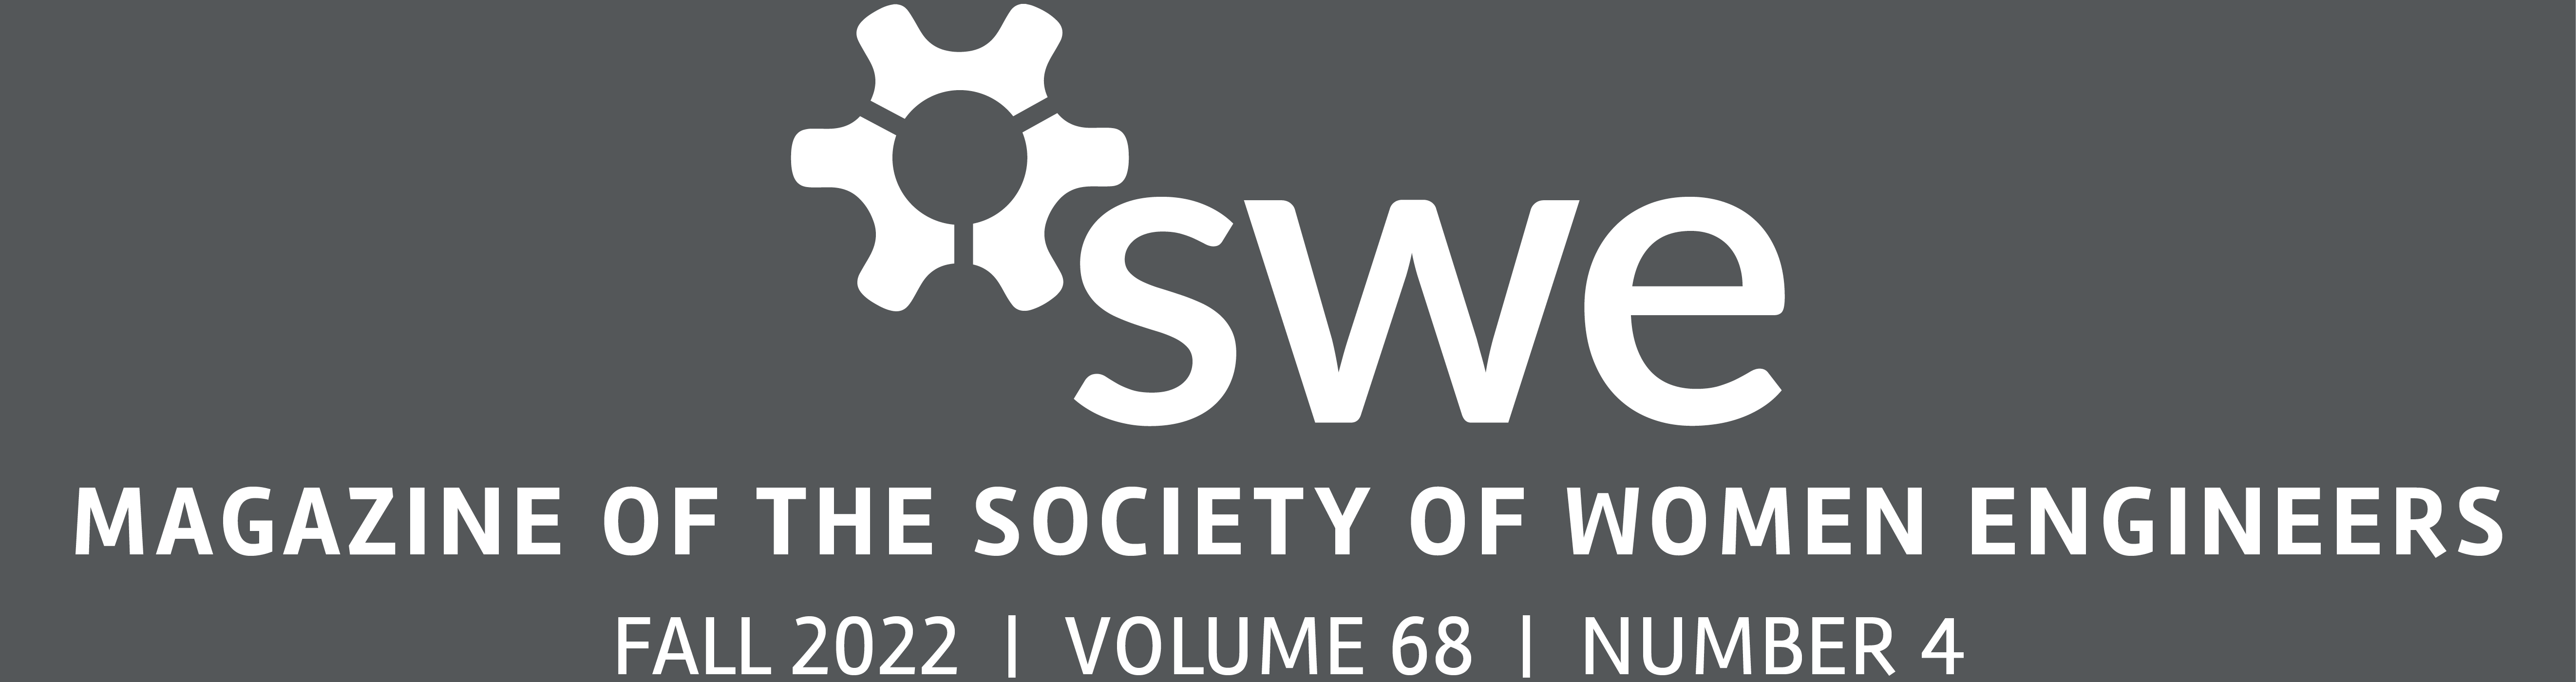 Society of Women Engineers – Magazine